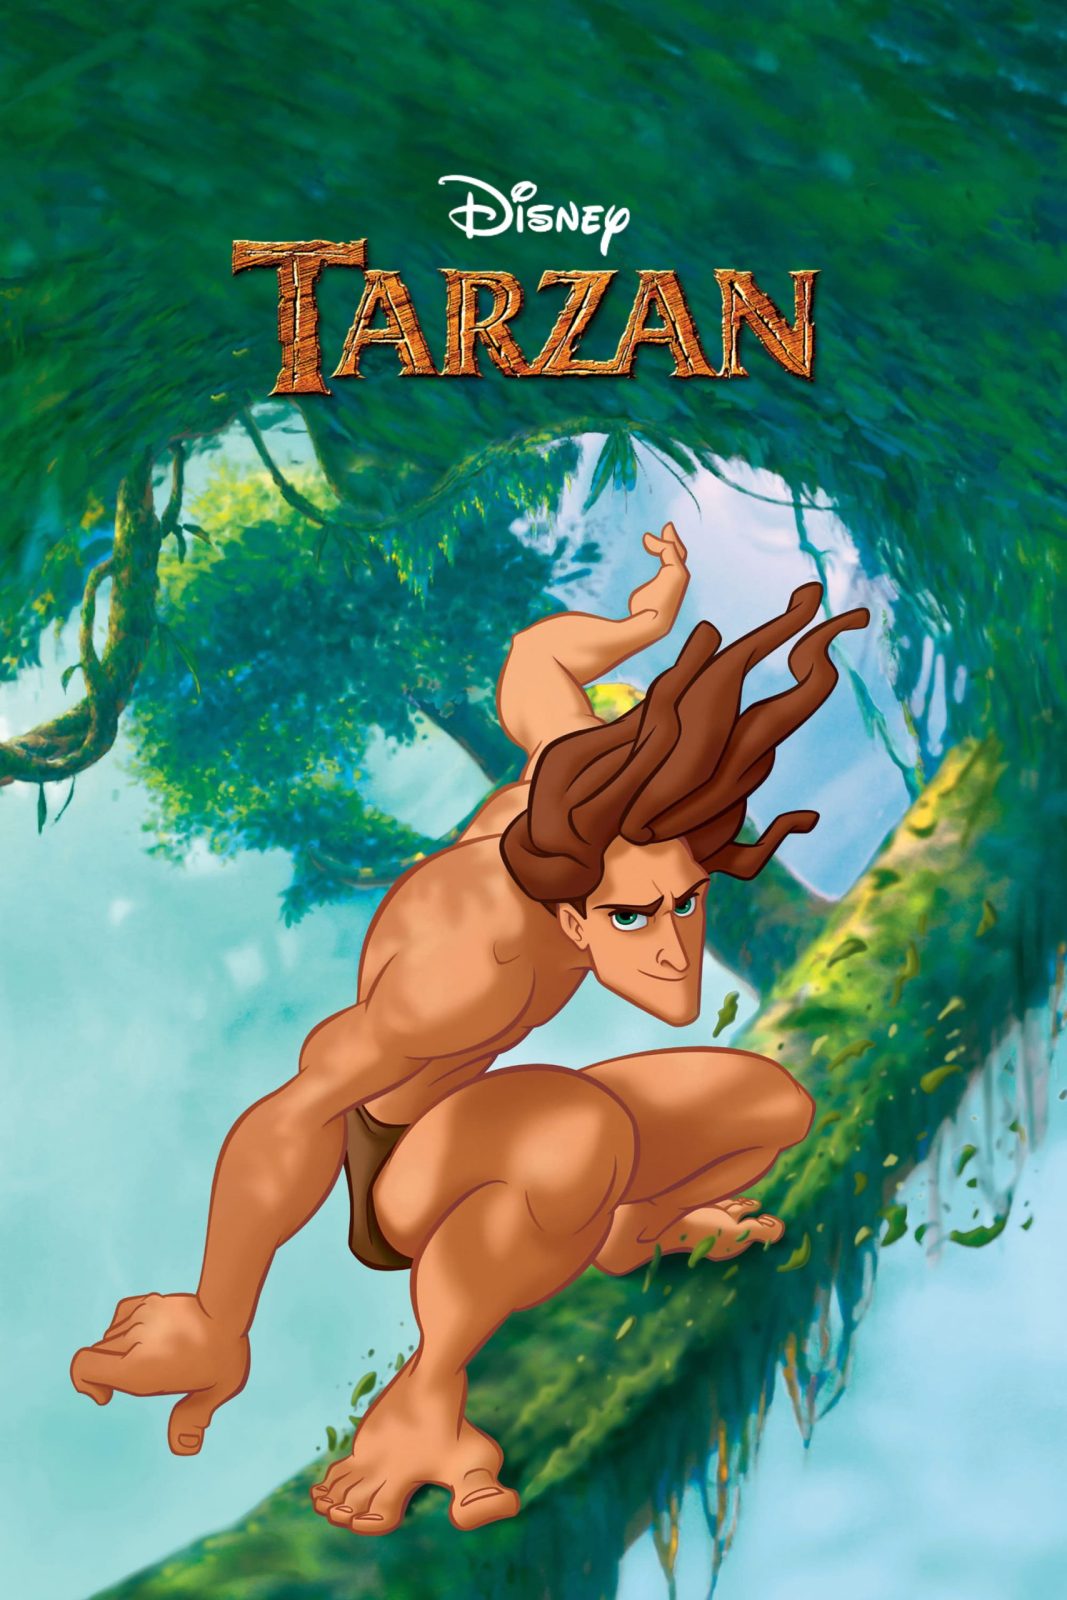 دانلود انیمیشن Tarzan 1999